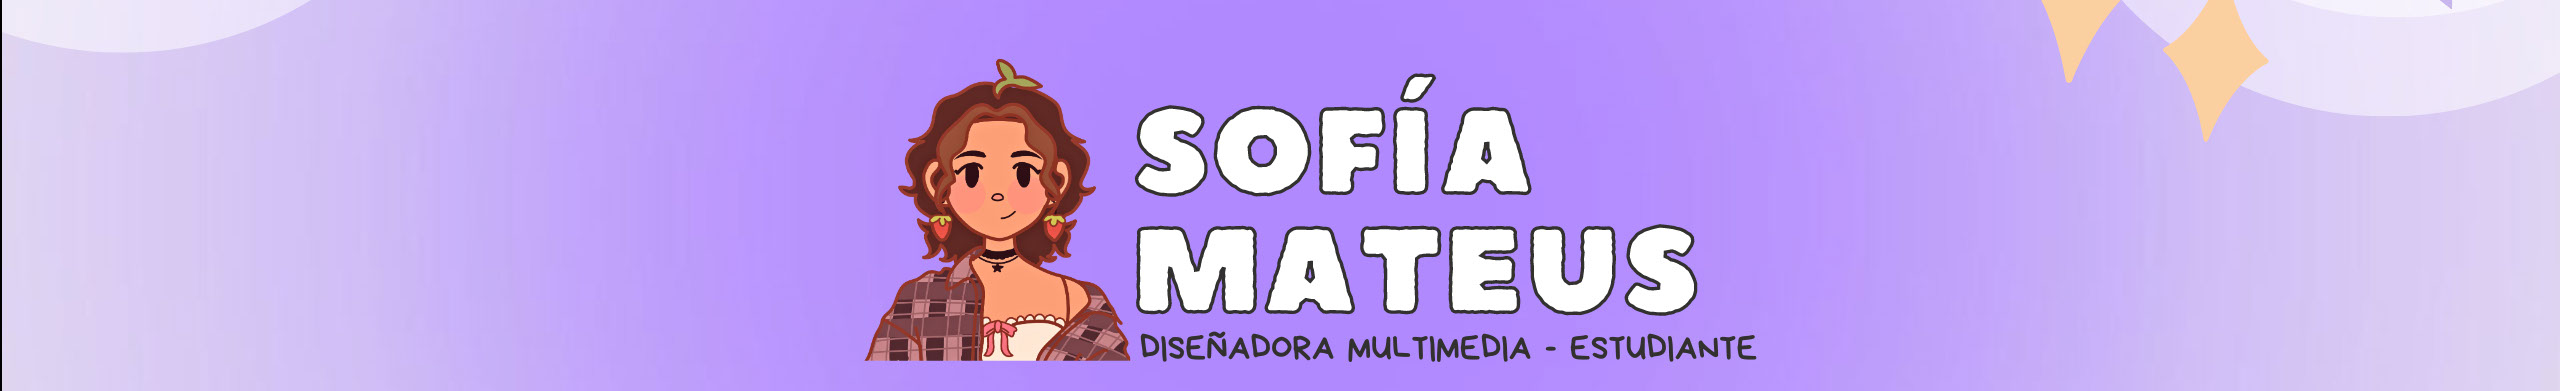 Sofía Mateus's profile banner